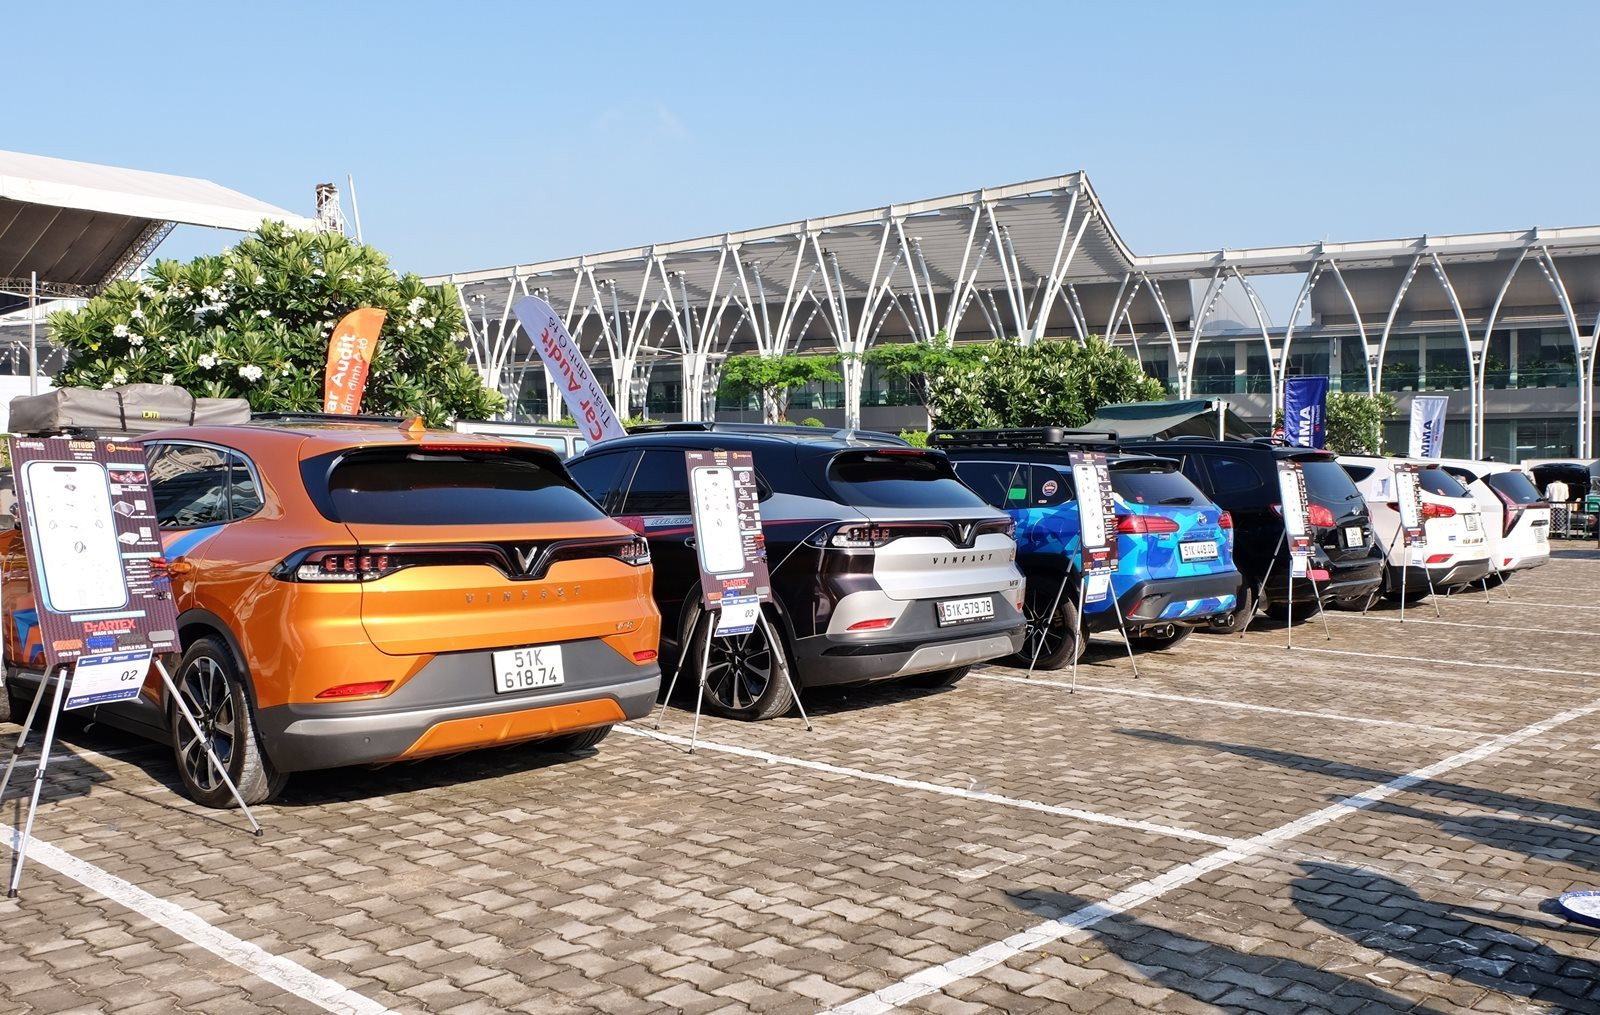 Không phải Trung Quốc, đây mới là thị trường xe điện đang 'bung lụa': doanh số vượt xe xăng, VinFast chuẩn bị xuất khẩu 3.000 xe trong quý 4 - Ảnh 1.